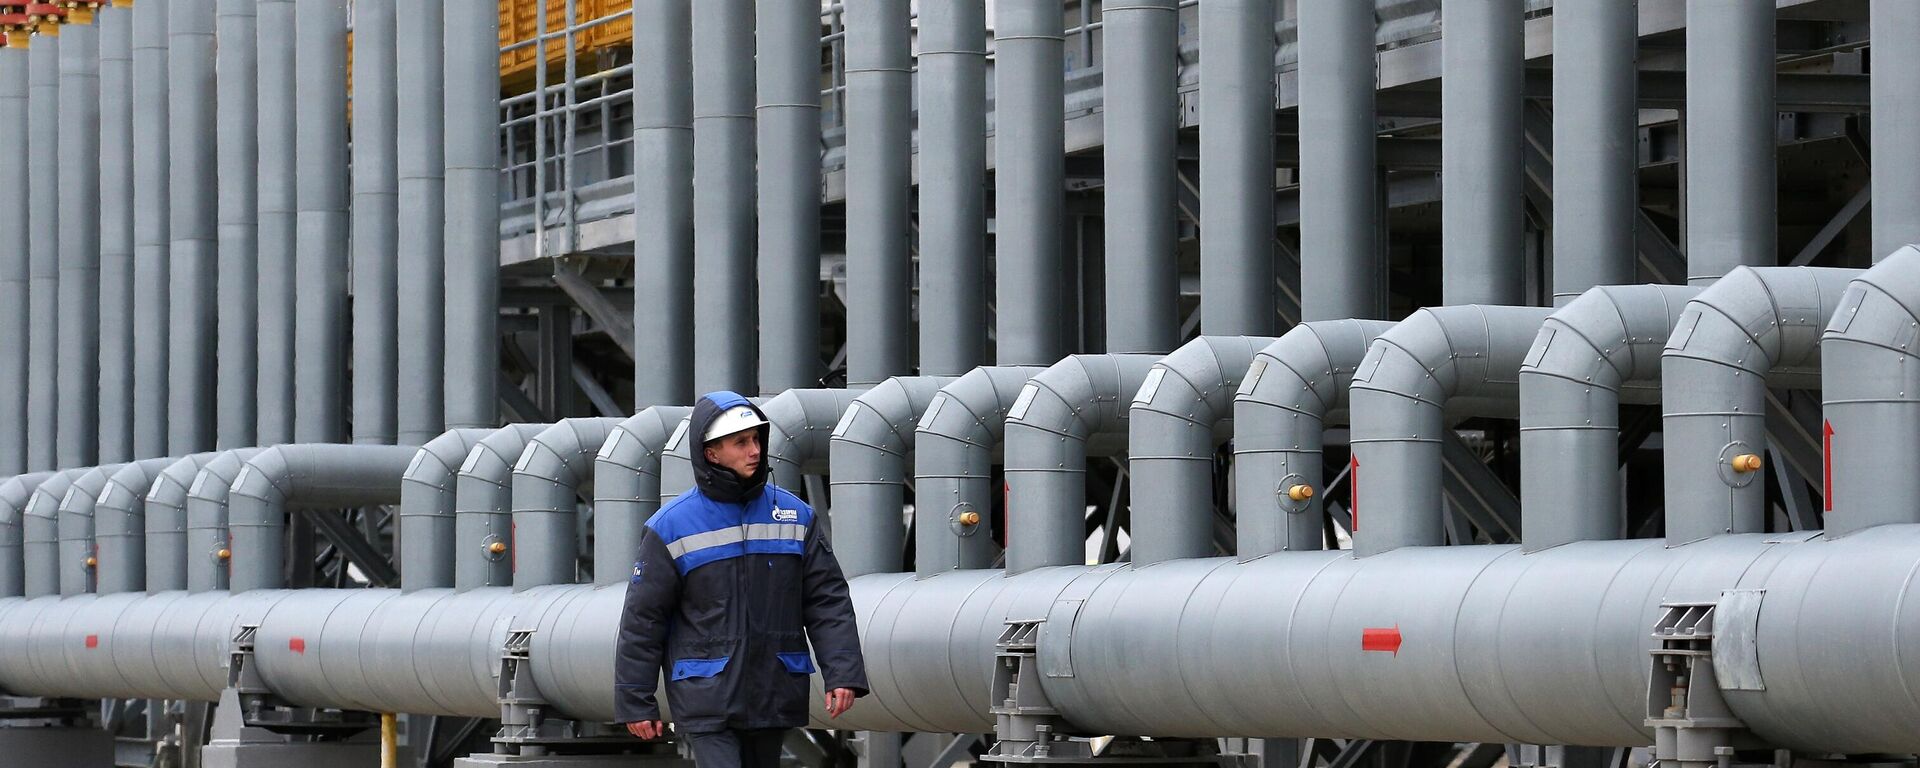 Trạm nén khí Russkaya, bộ phận của hệ thống đường ống dẫn khí nhằm đảm bảo nguồn cung cấp khí đốt cho Dòng chảy Thổ Nhĩ Kỳ. - Sputnik Việt Nam, 1920, 26.06.2022